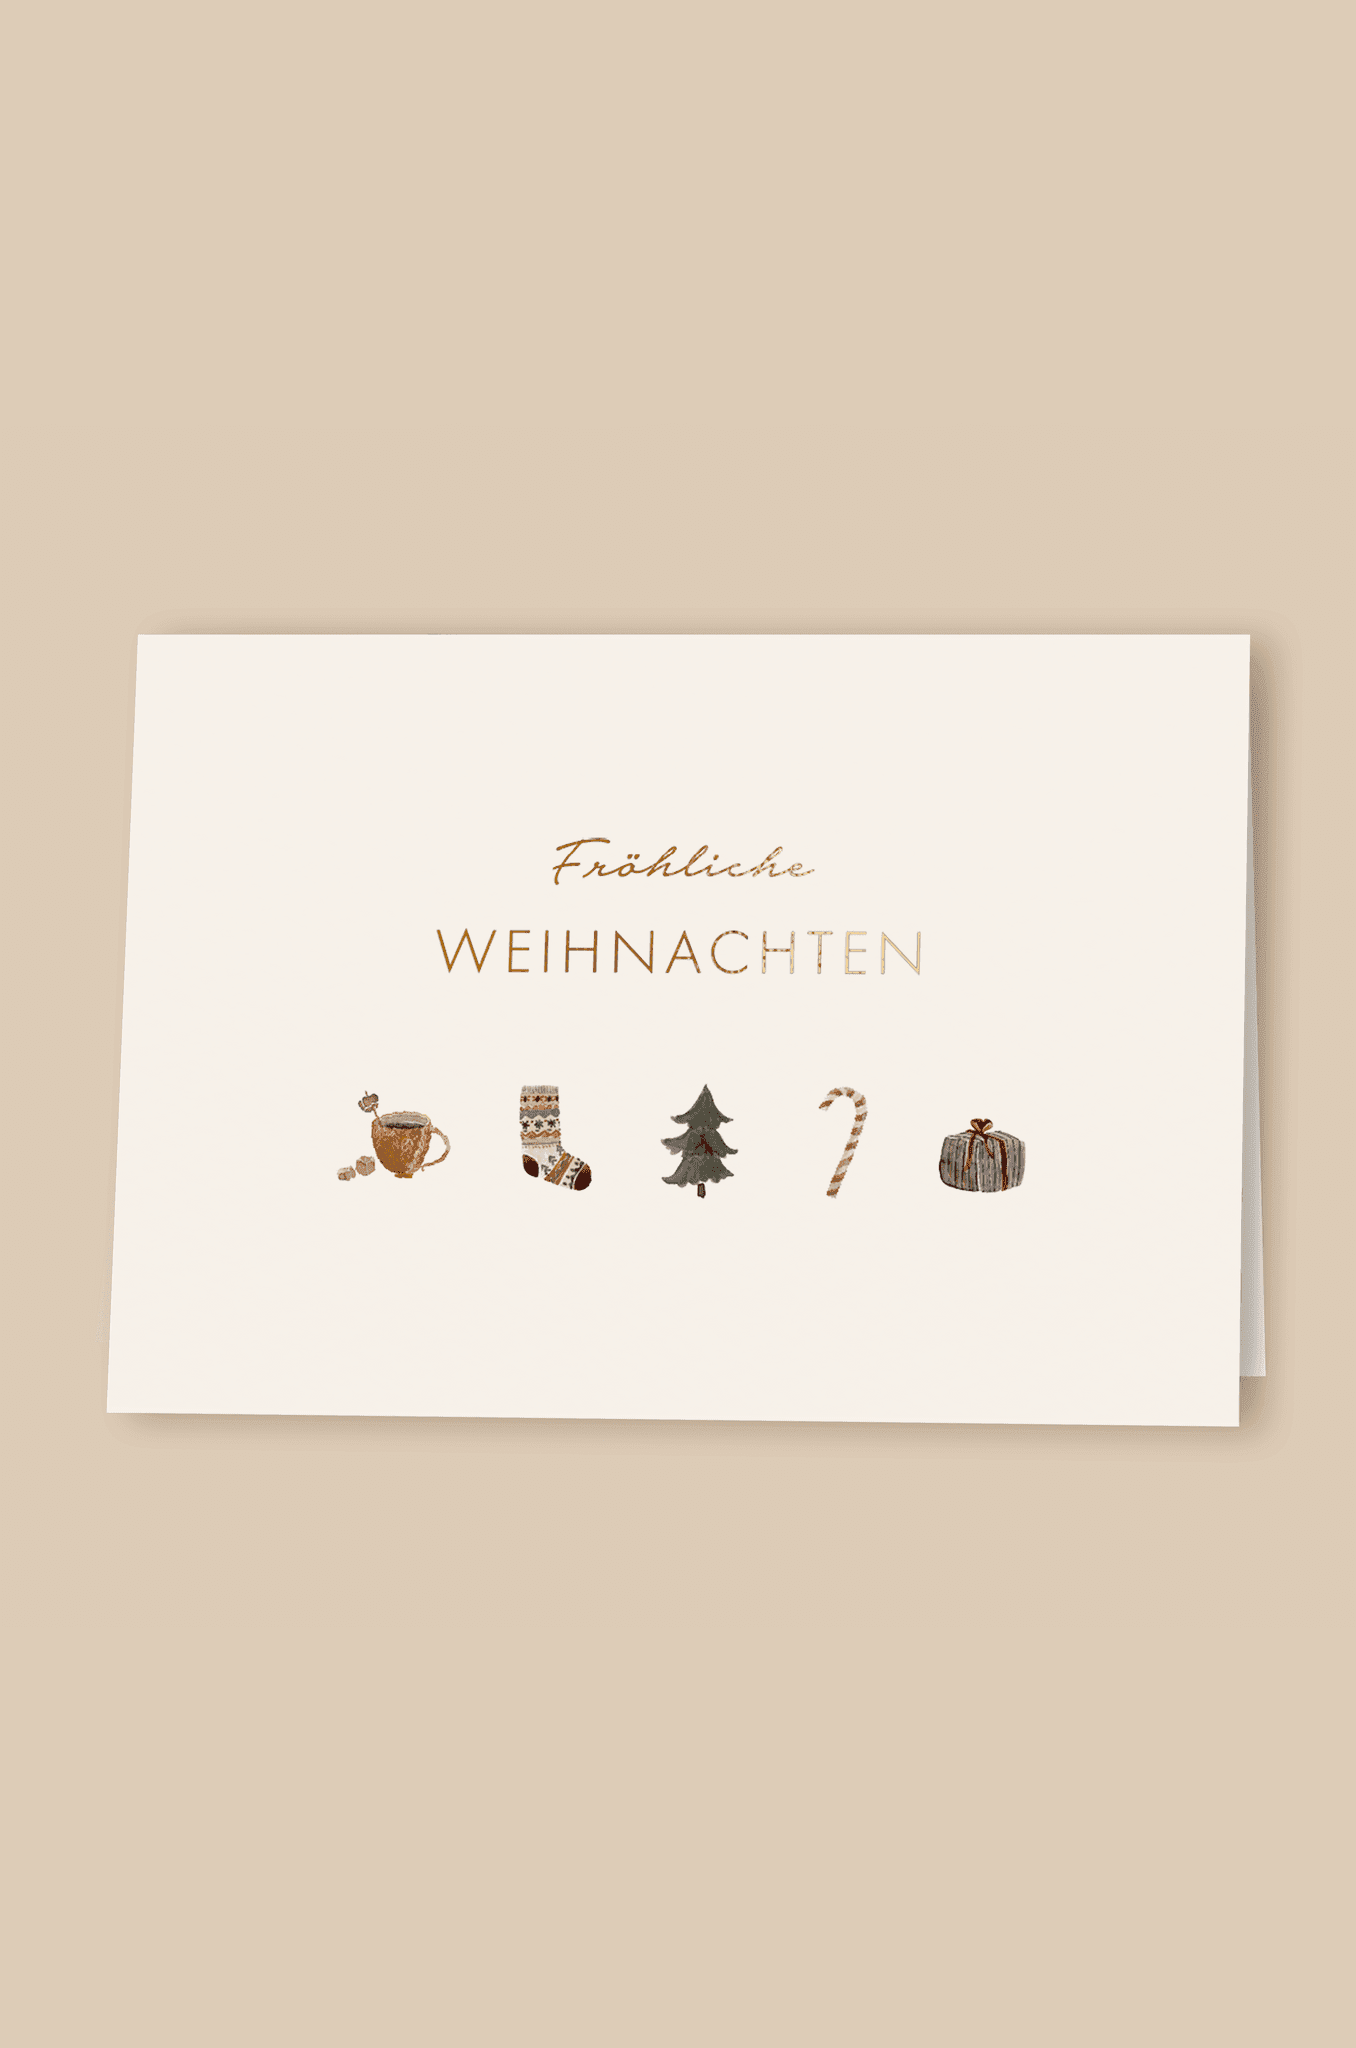 Klappkarte "Fröhliche Weihnachten" - The Little One • Family.Concept.Store. 